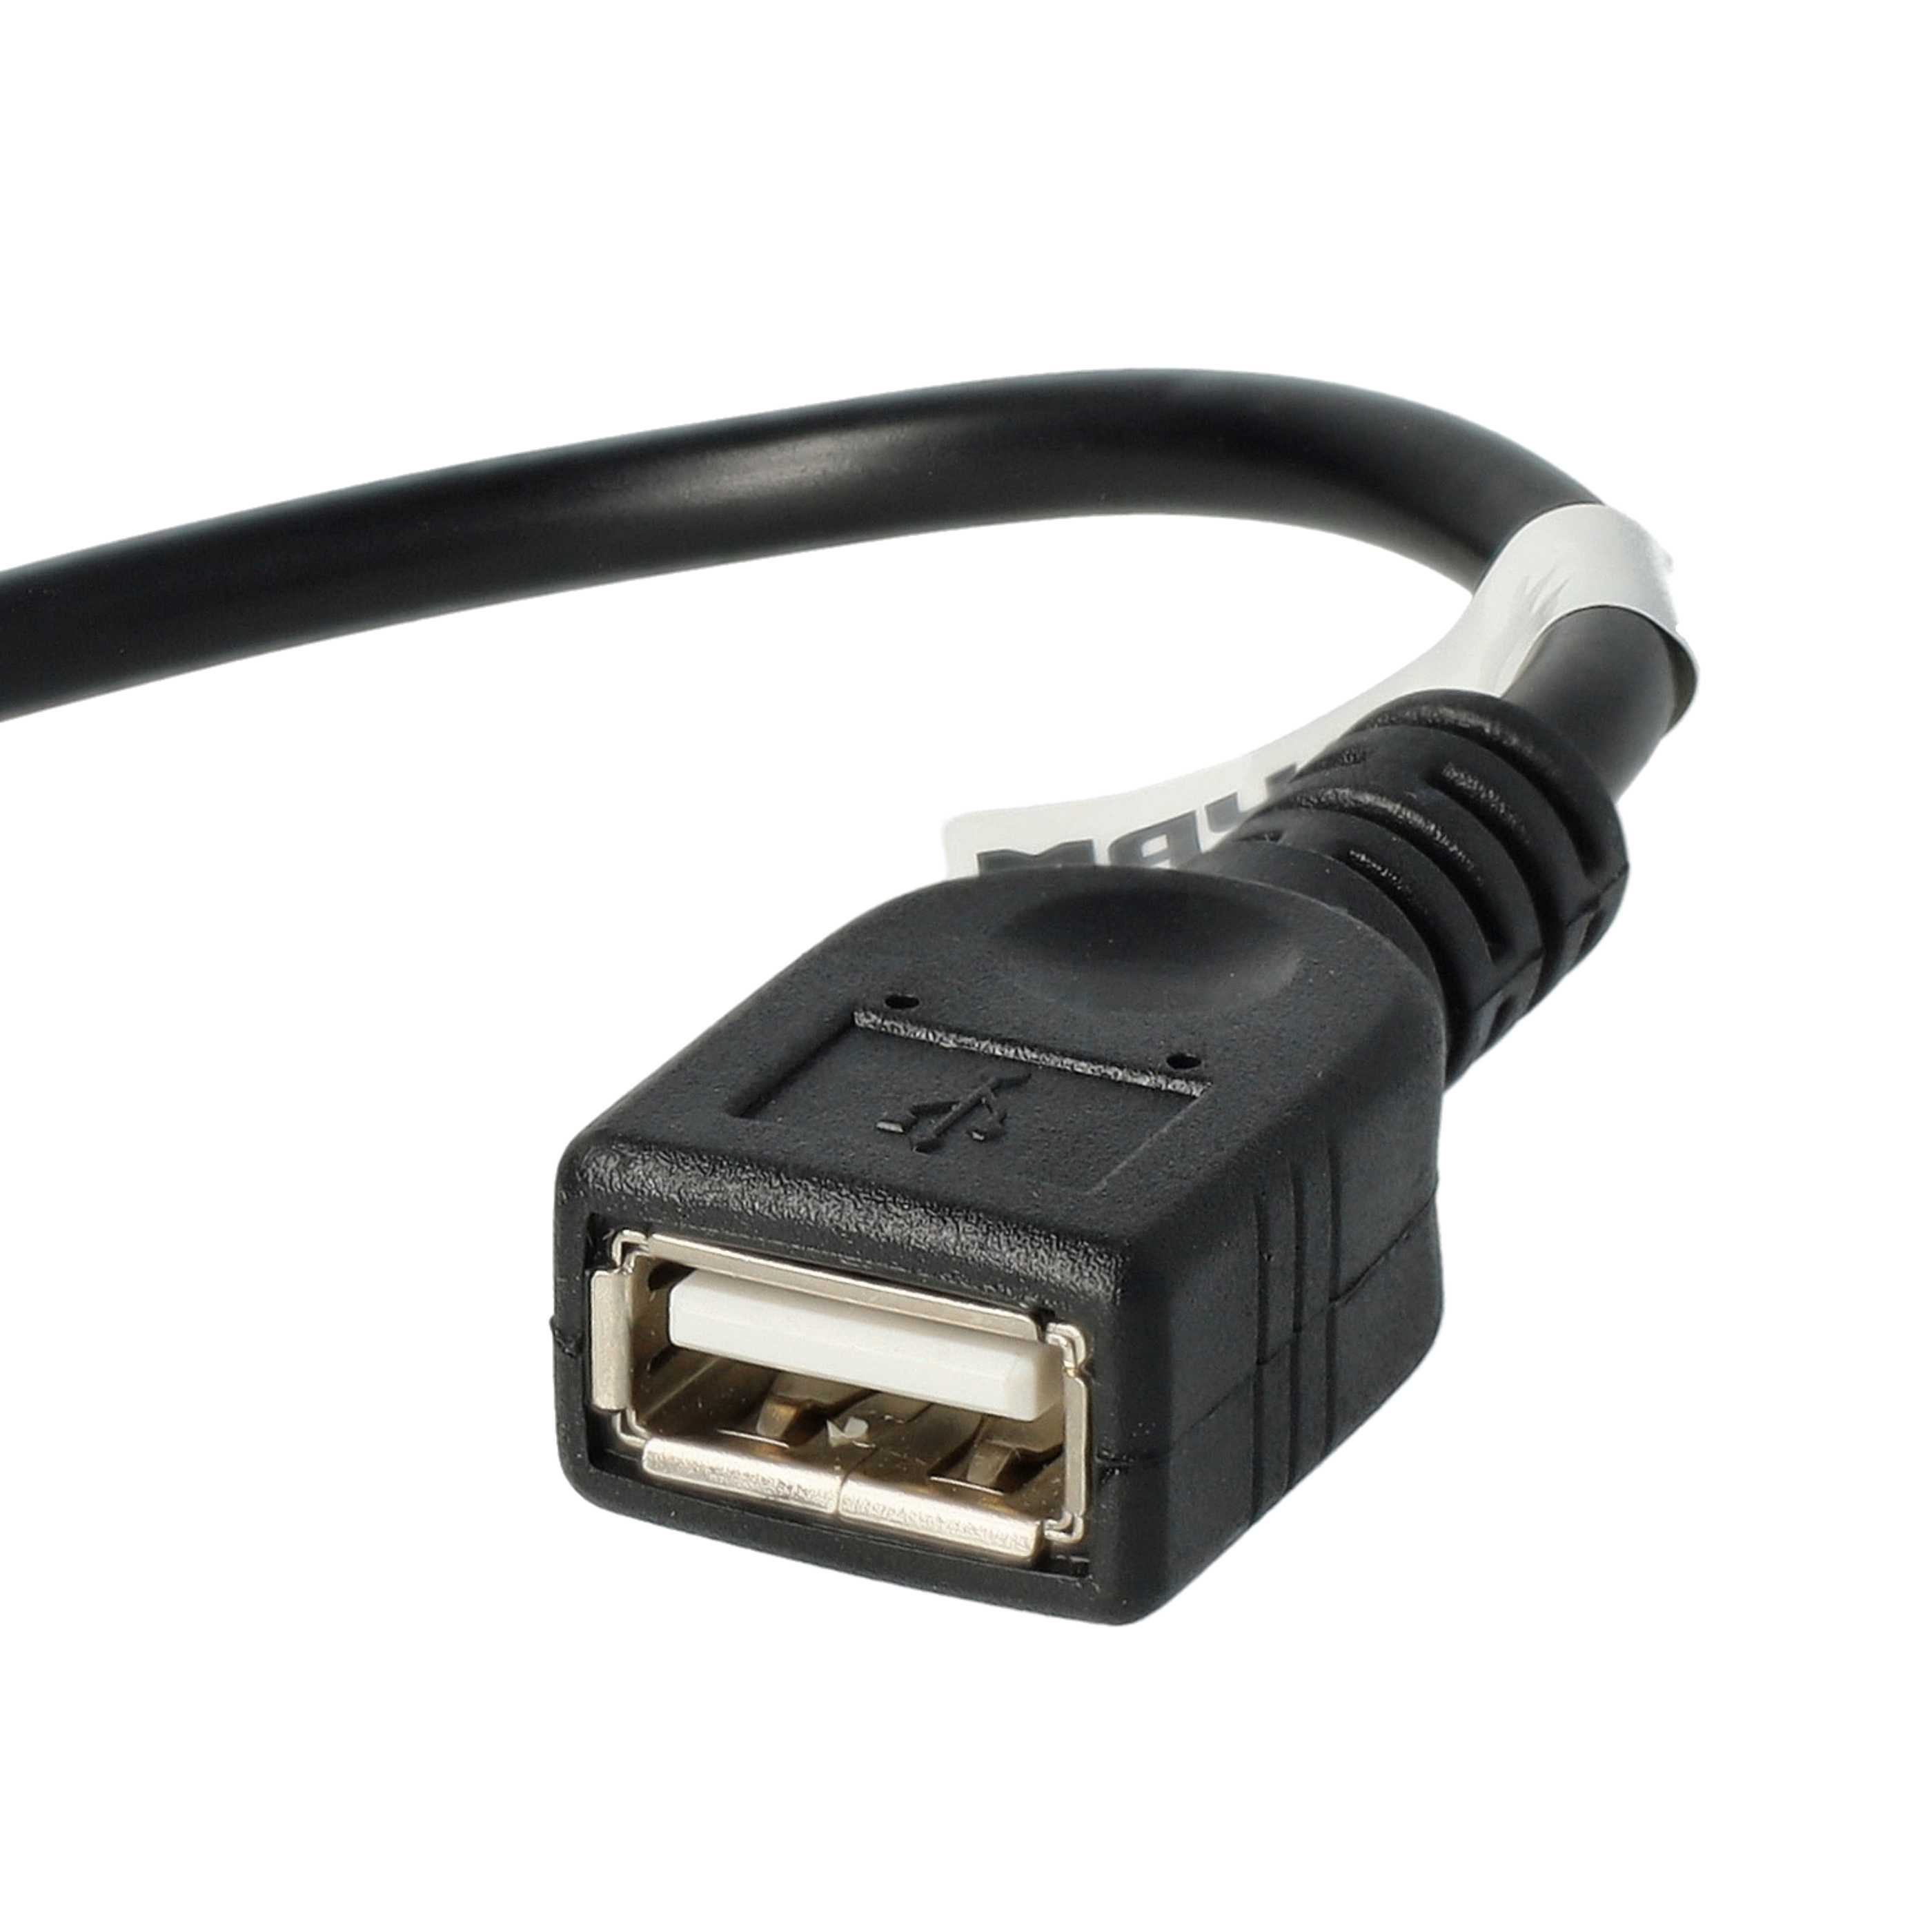 Adapter OTG Micro-USB auf USB (weiblich) 90° Winkel für Smartphone, Tablet, Laptop, Notebook, PC